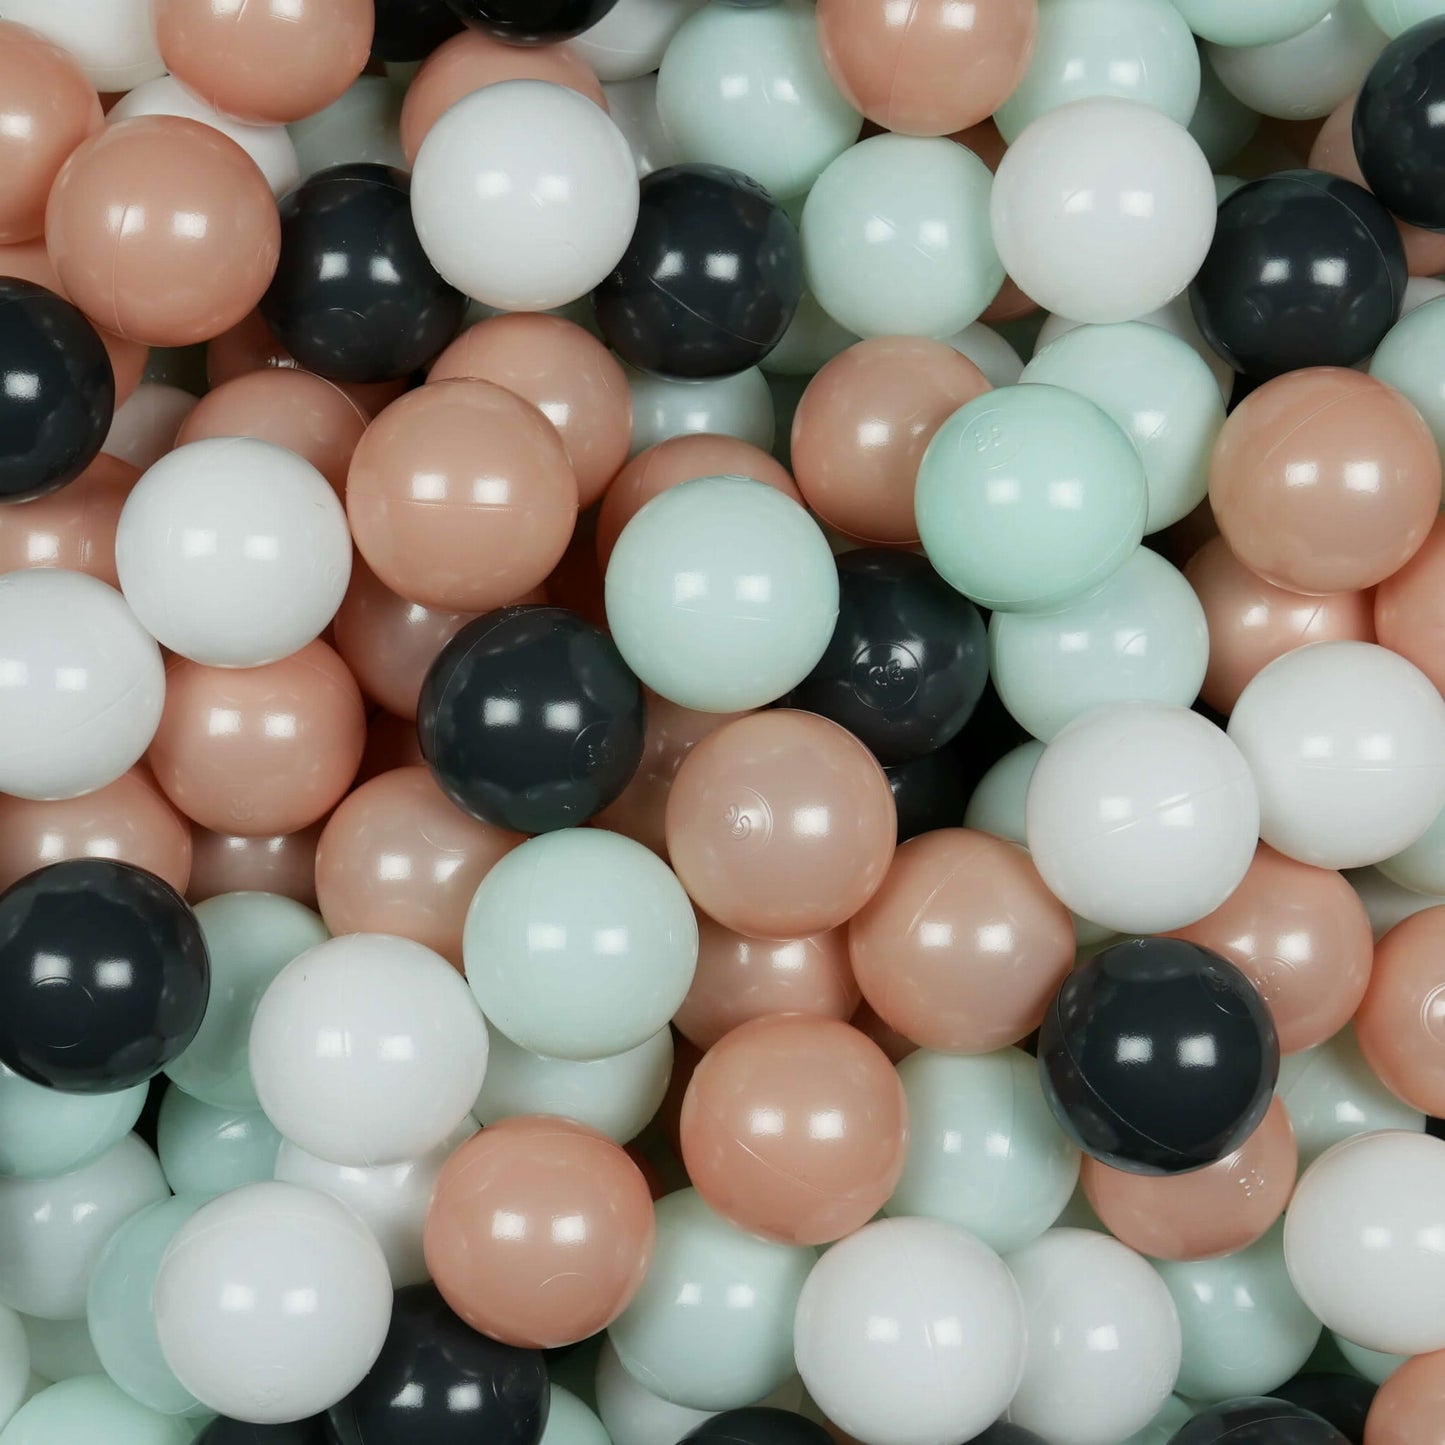 Balles de jeu ø7cm 500 pièces blanc, graphite, rose or, menthe claire